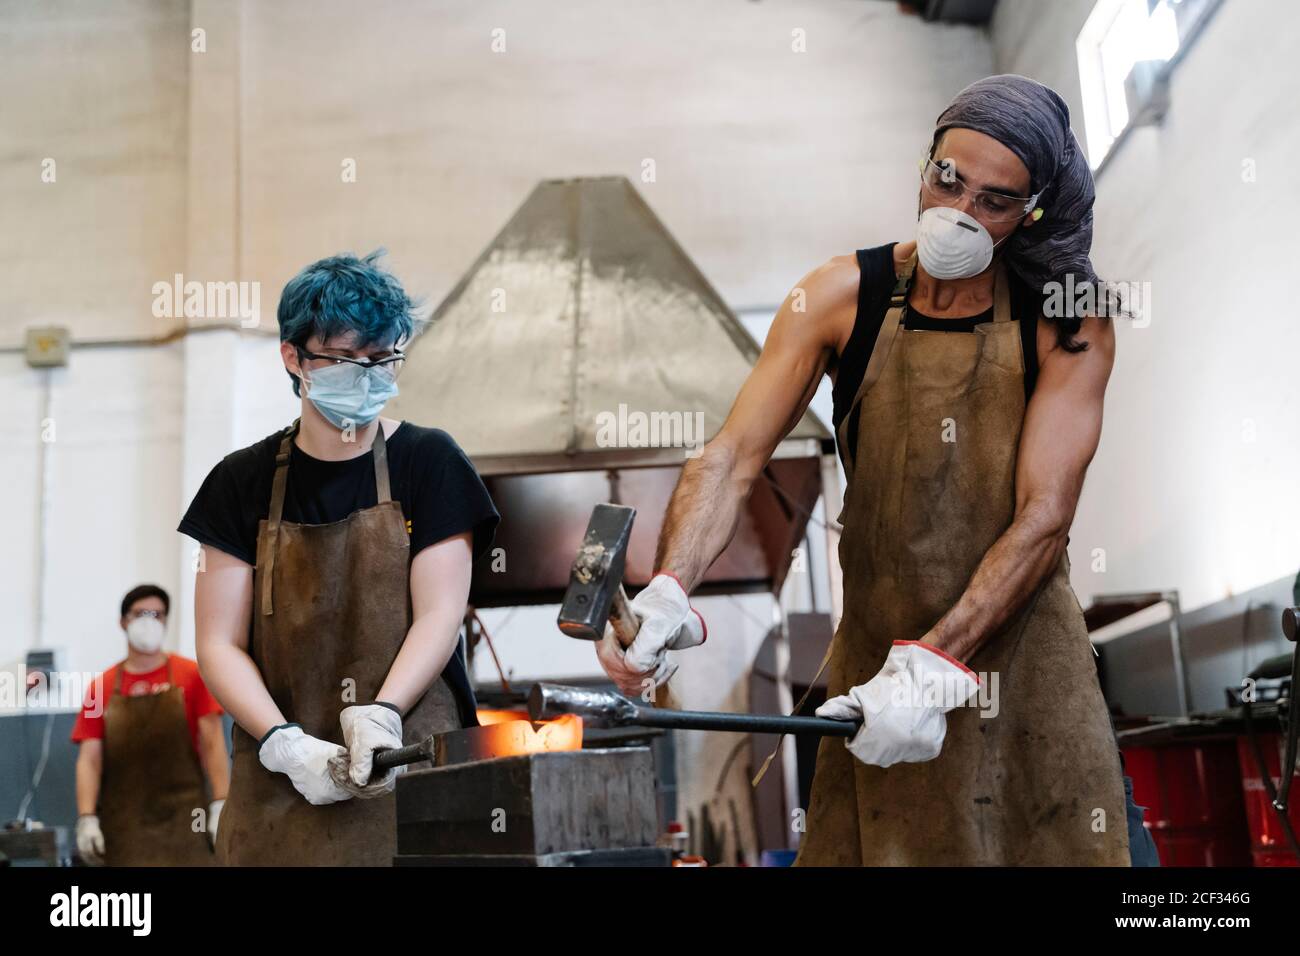 Schmiede in Masken schlagen heißes Metall mit Hammer während der Arbeit Stockfoto